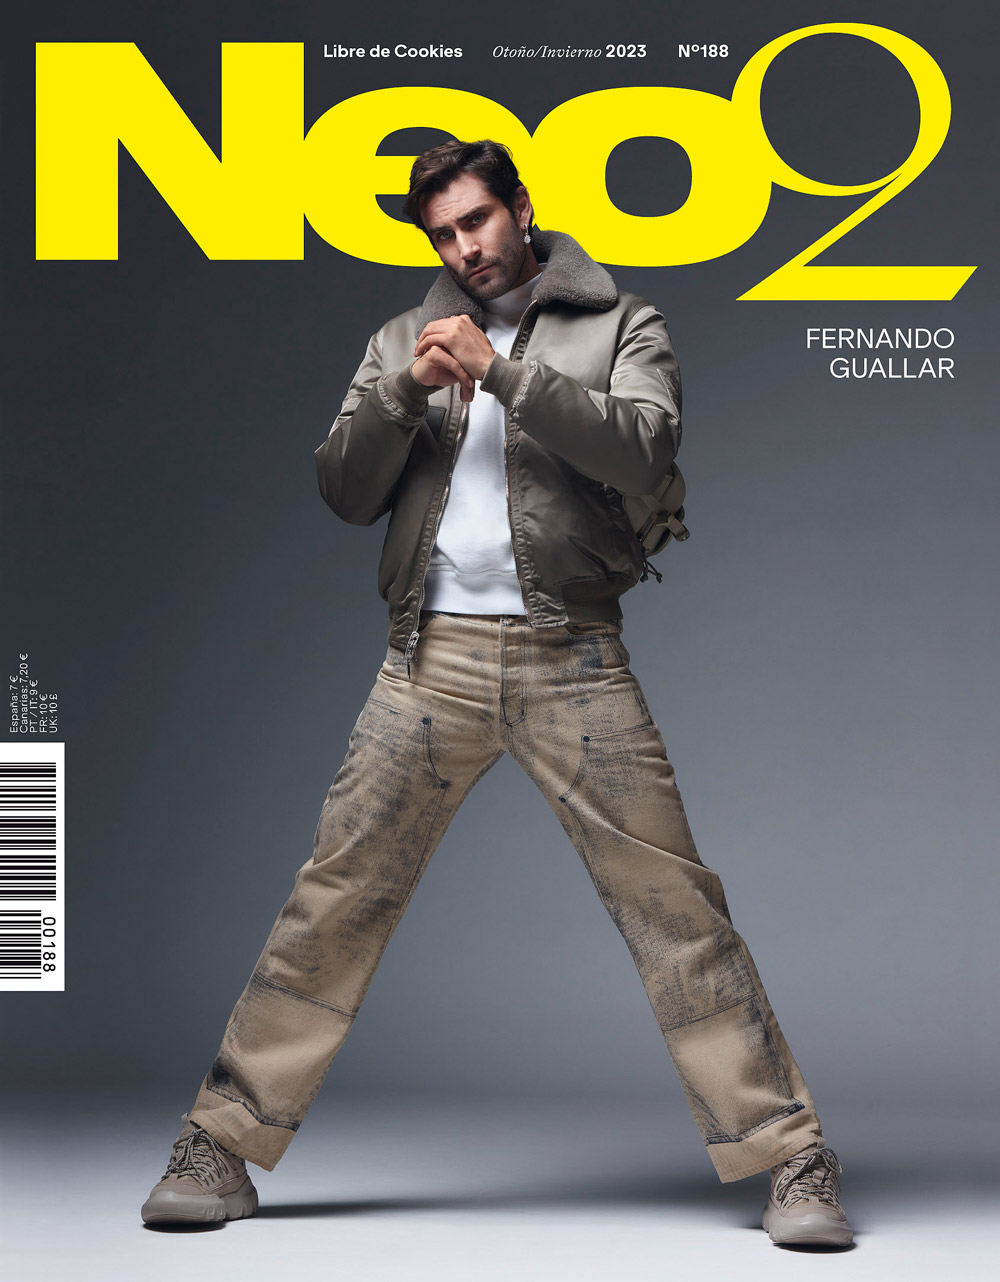 fernando guallar portada revista Neo2